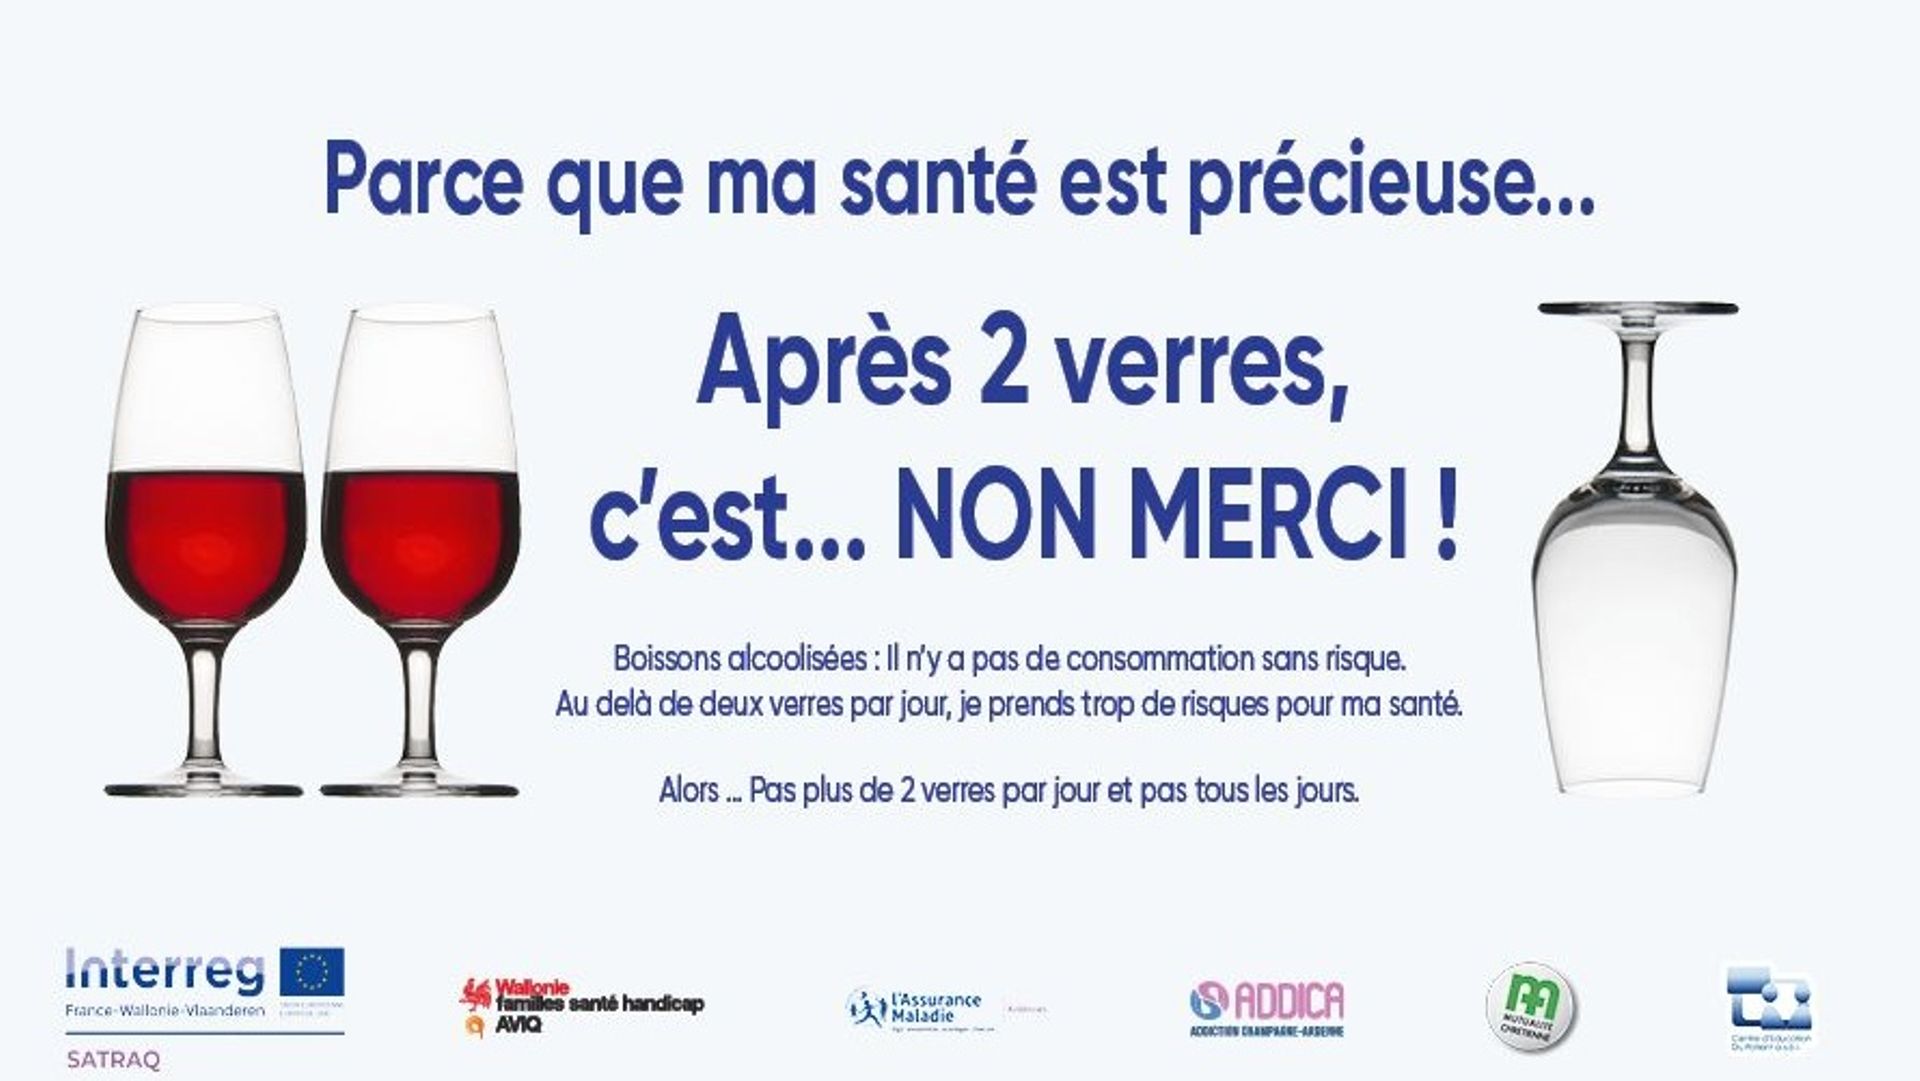 Une campagne franco-belge de sensiblisation aux conséquences d'une consommation d'alcool même modérée